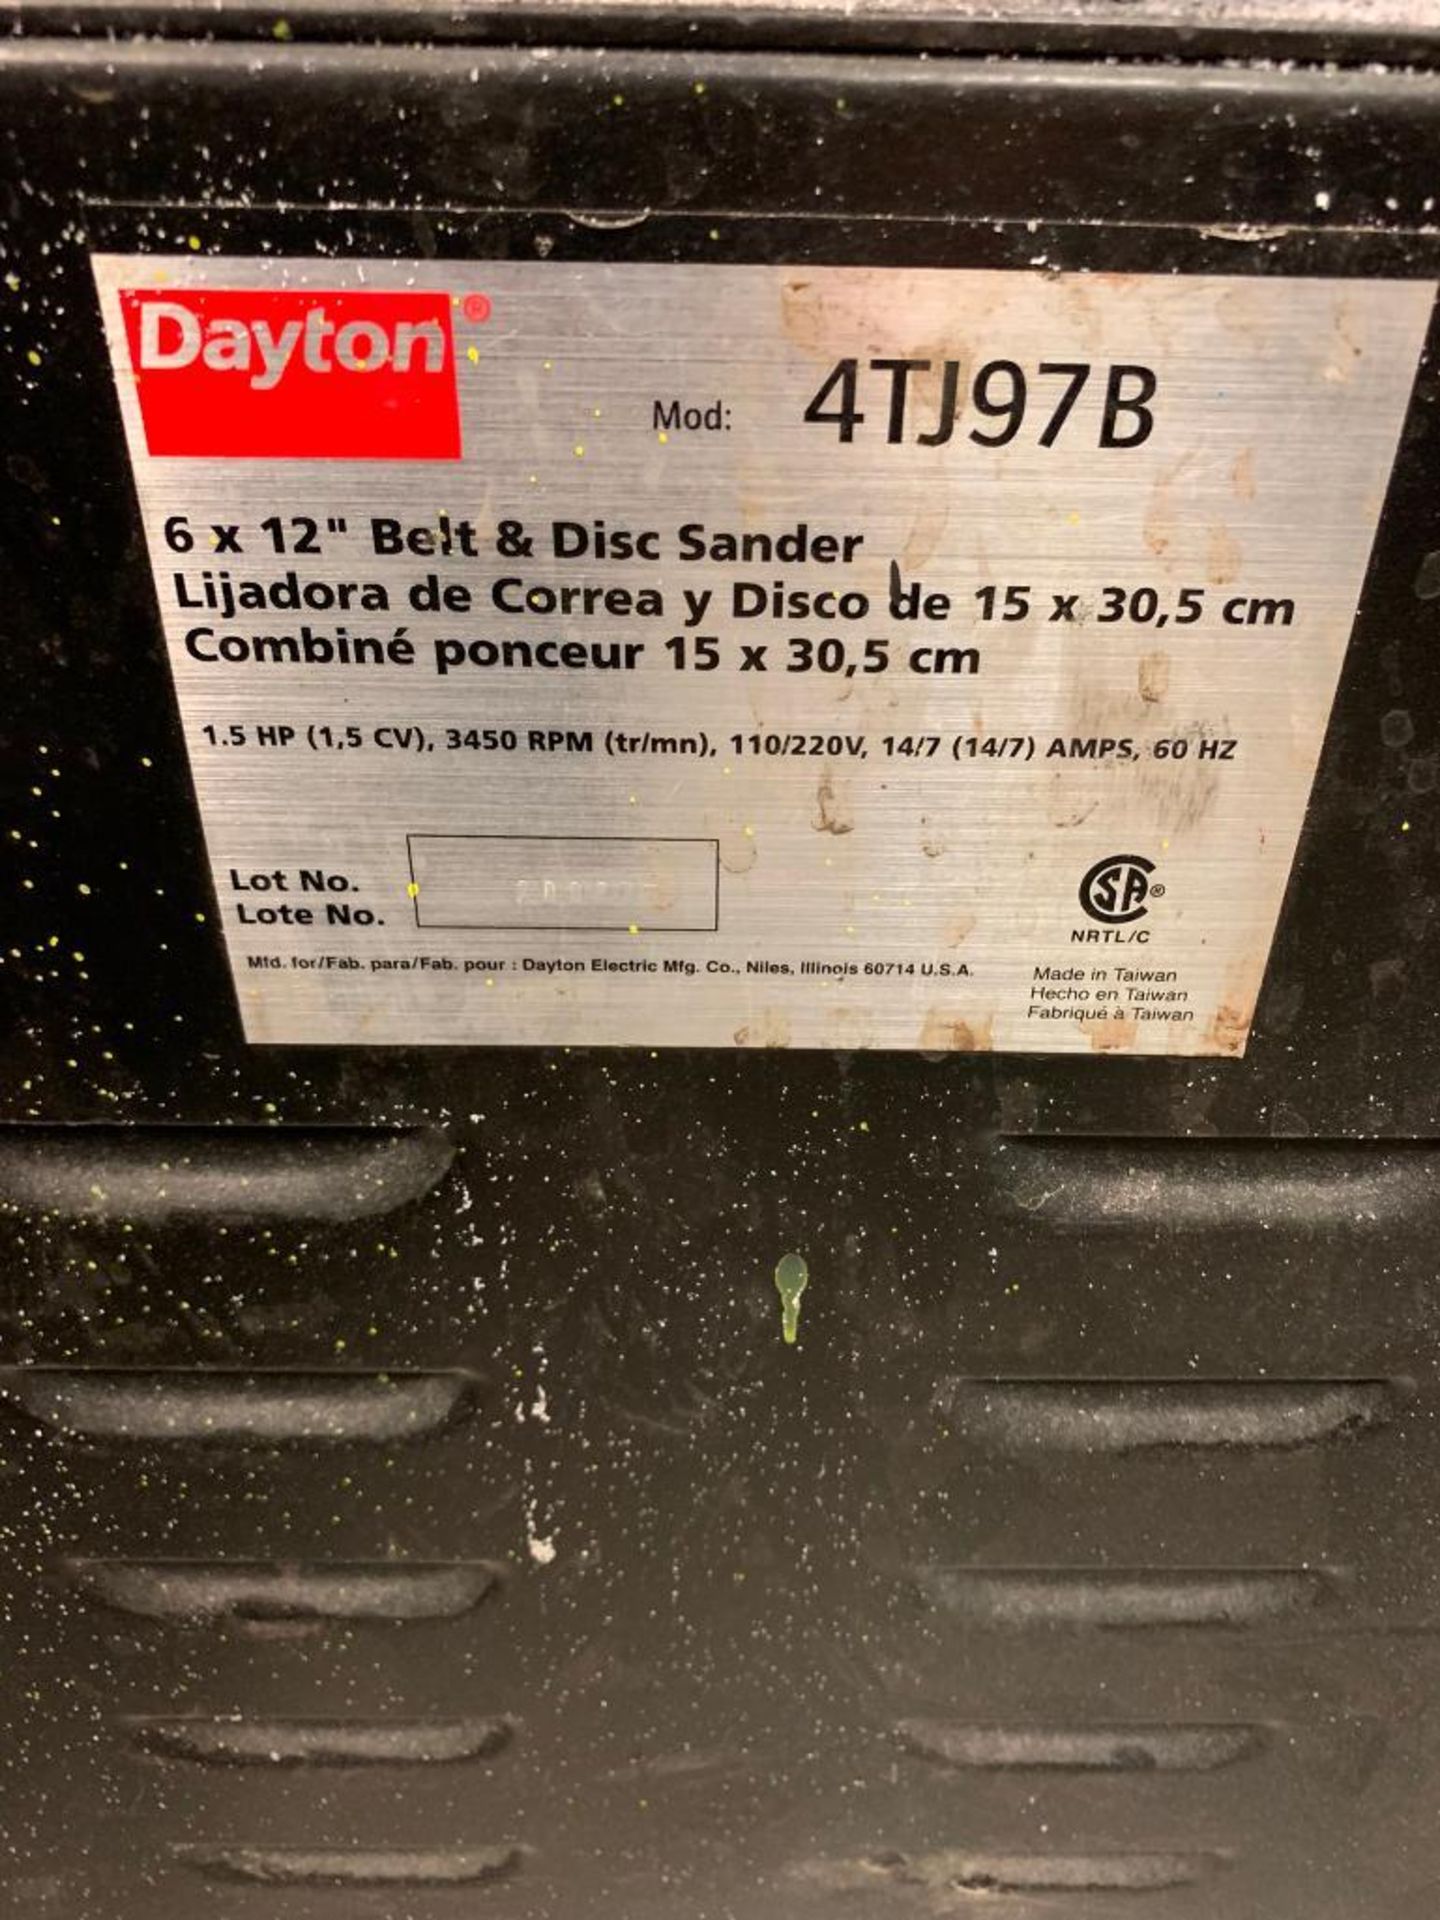 Dayton 6 X 12 Belt & Disc Grinder, Model 4TJ97B, 1.5-HP, 110/220 V - Image 3 of 3